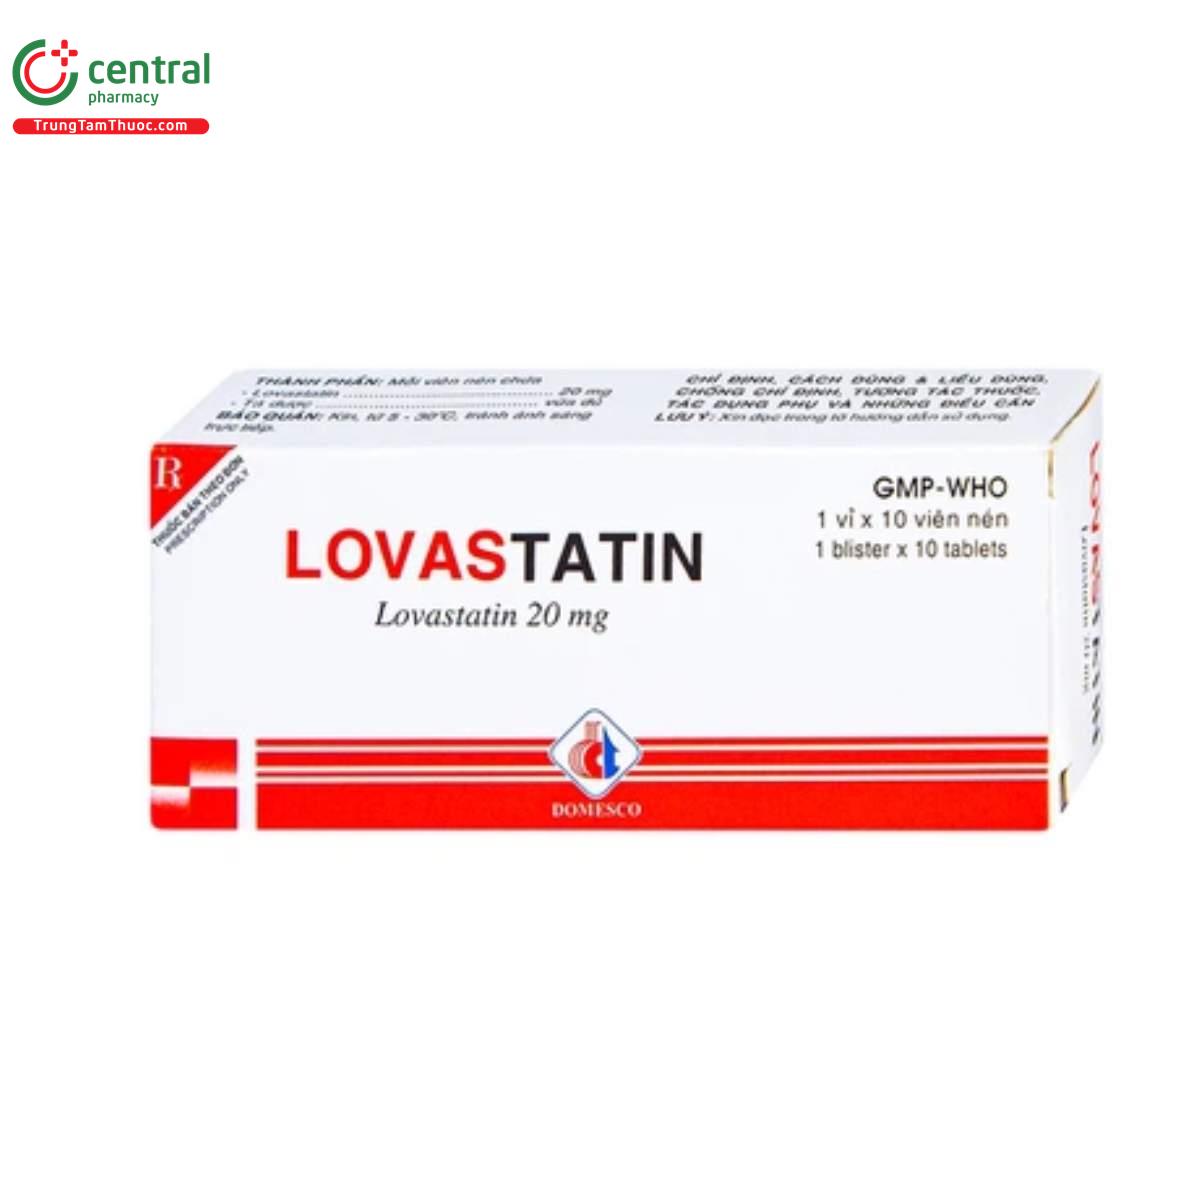 lovastatin 20 mg domesco 4 D1048